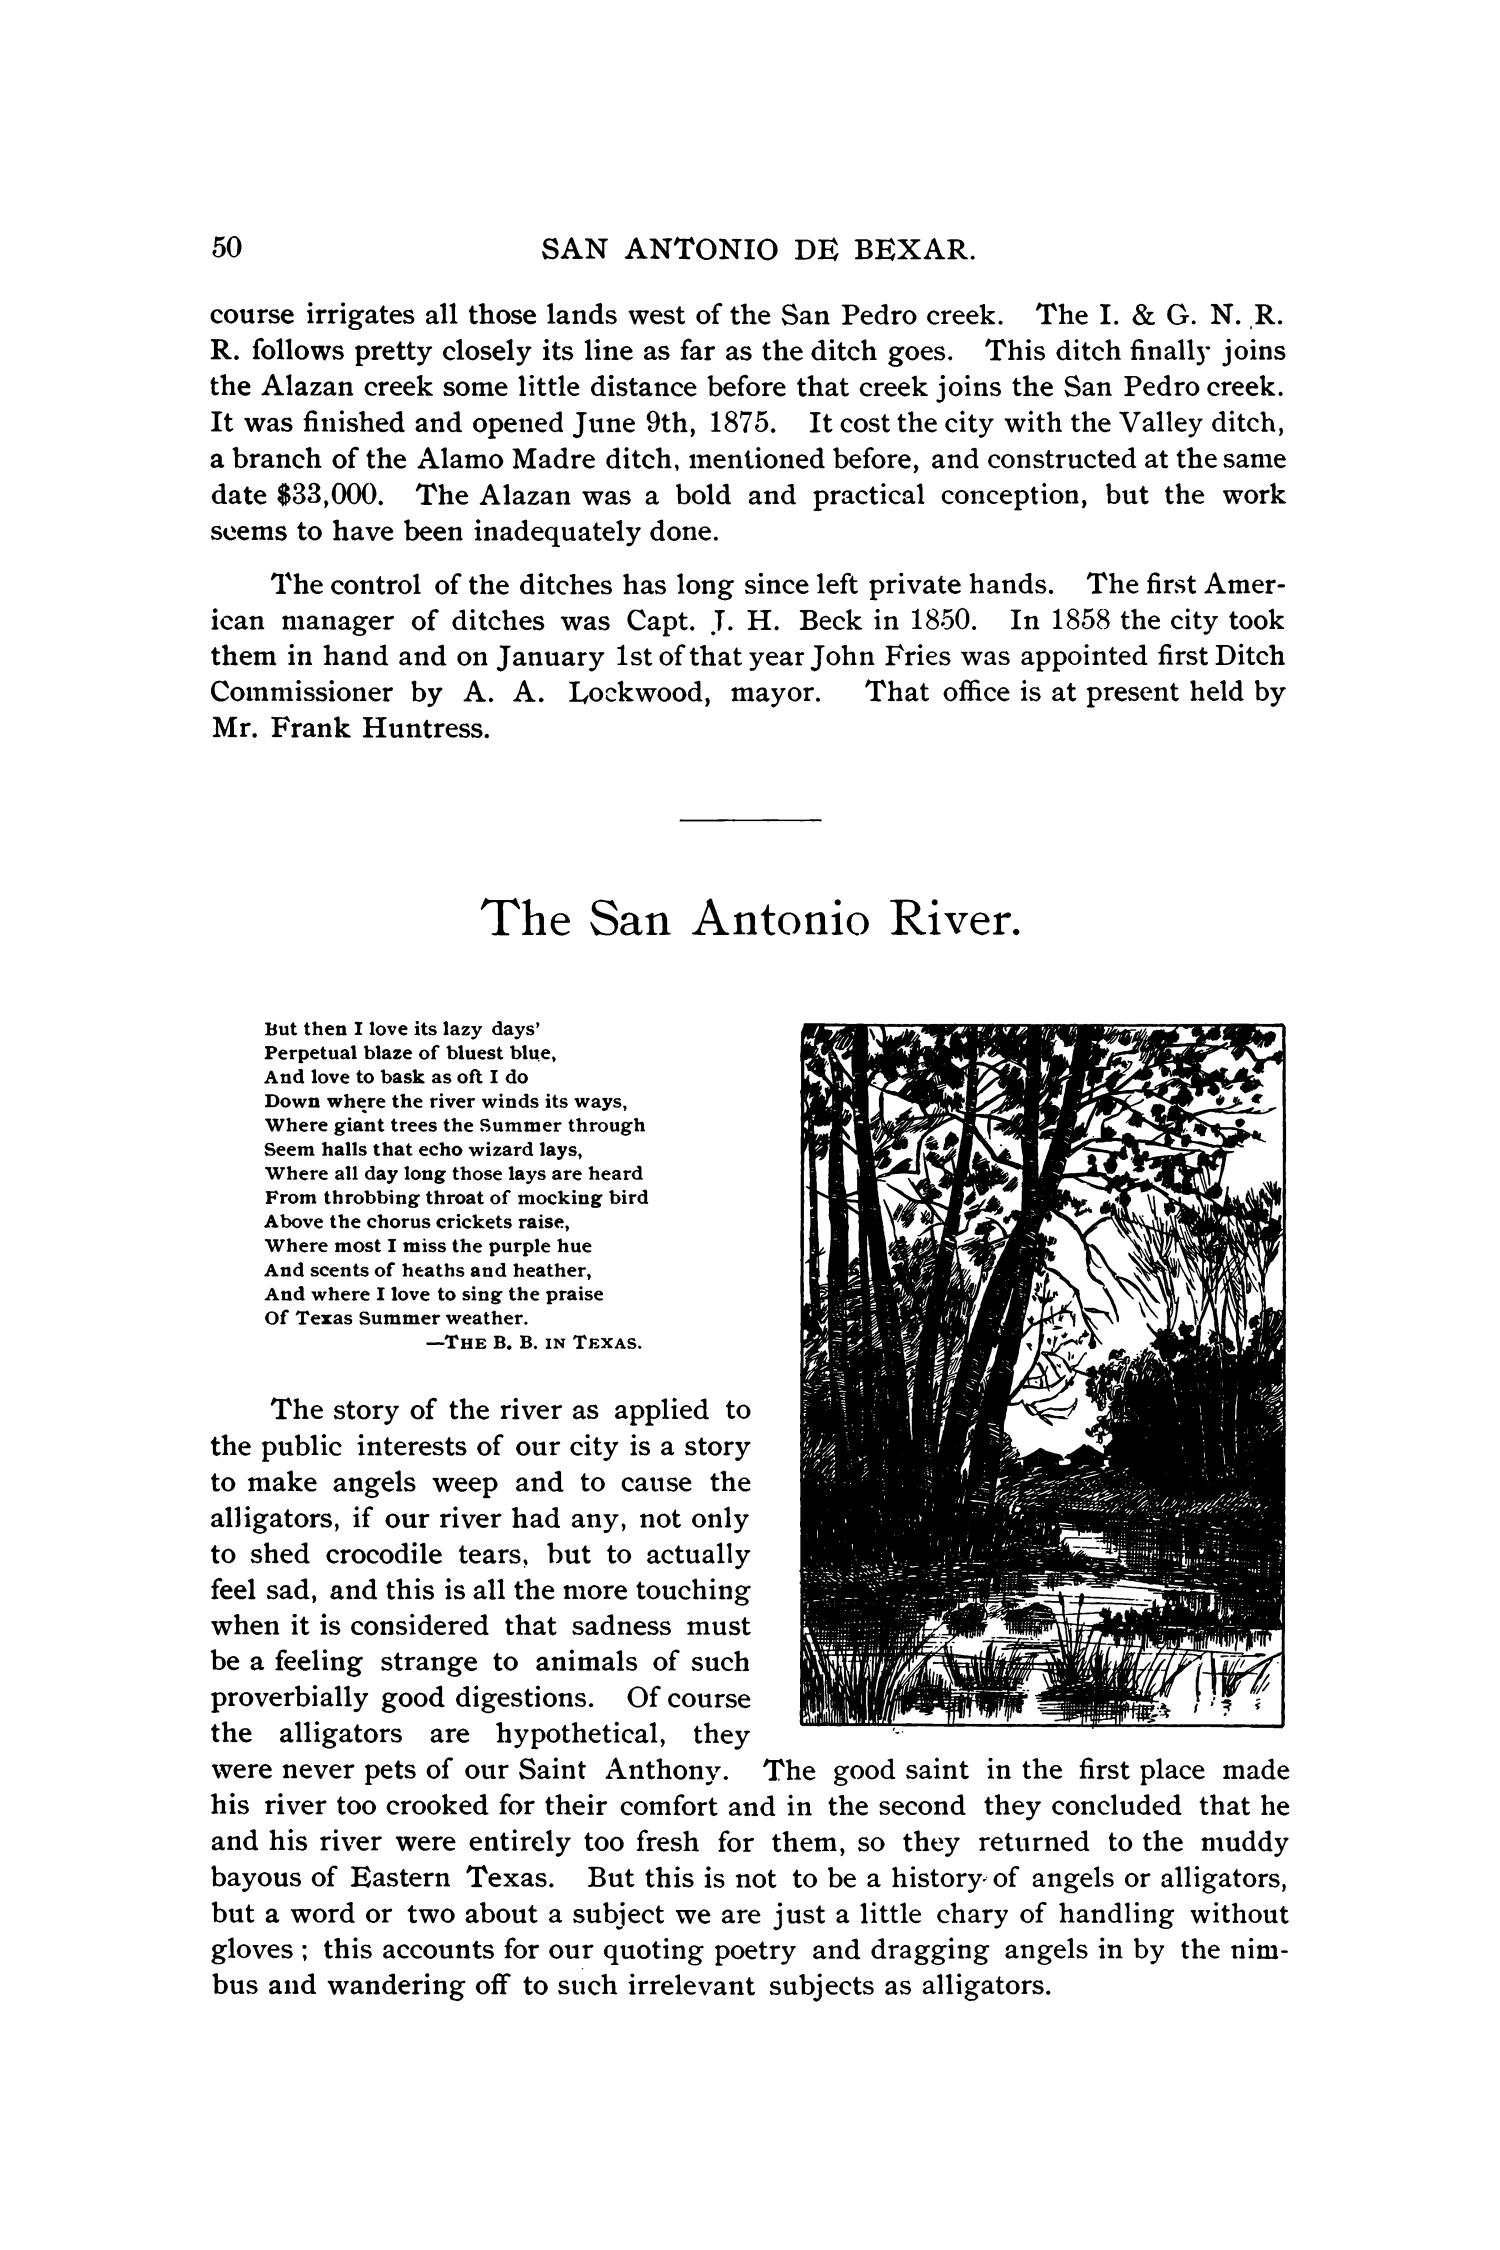 San Antonio de Bexar: A Guide and History
                                                
                                                    50
                                                